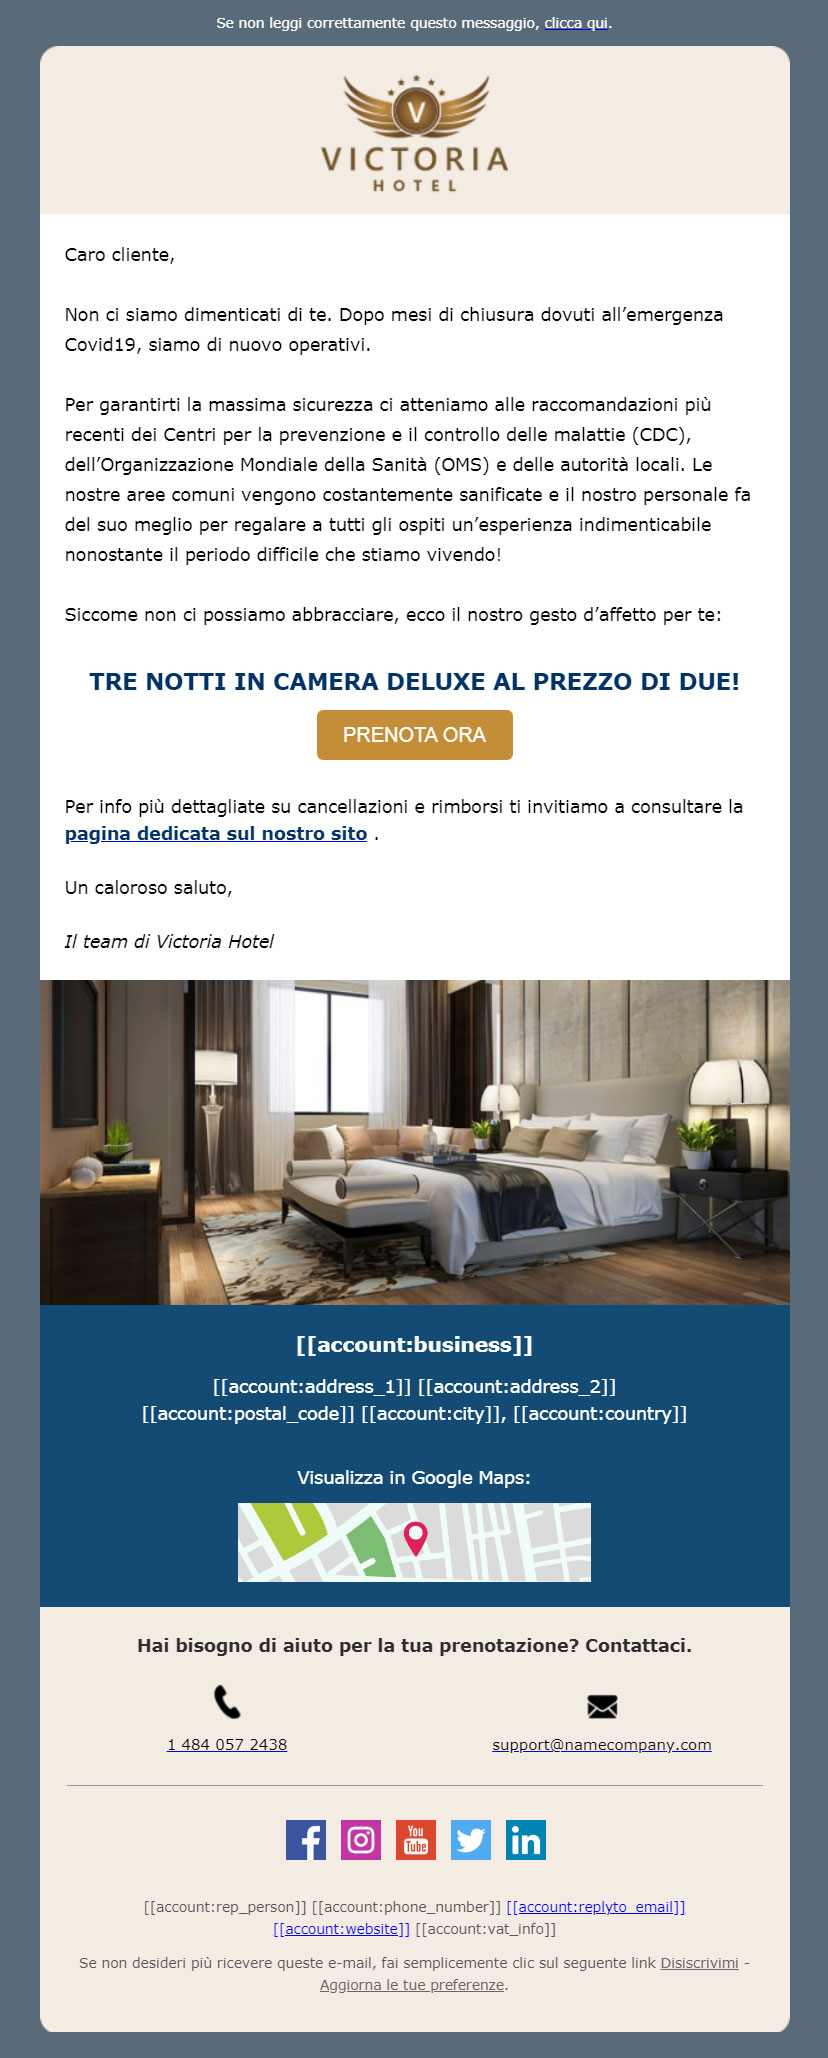 Email marketing per hotel post-coronavirus